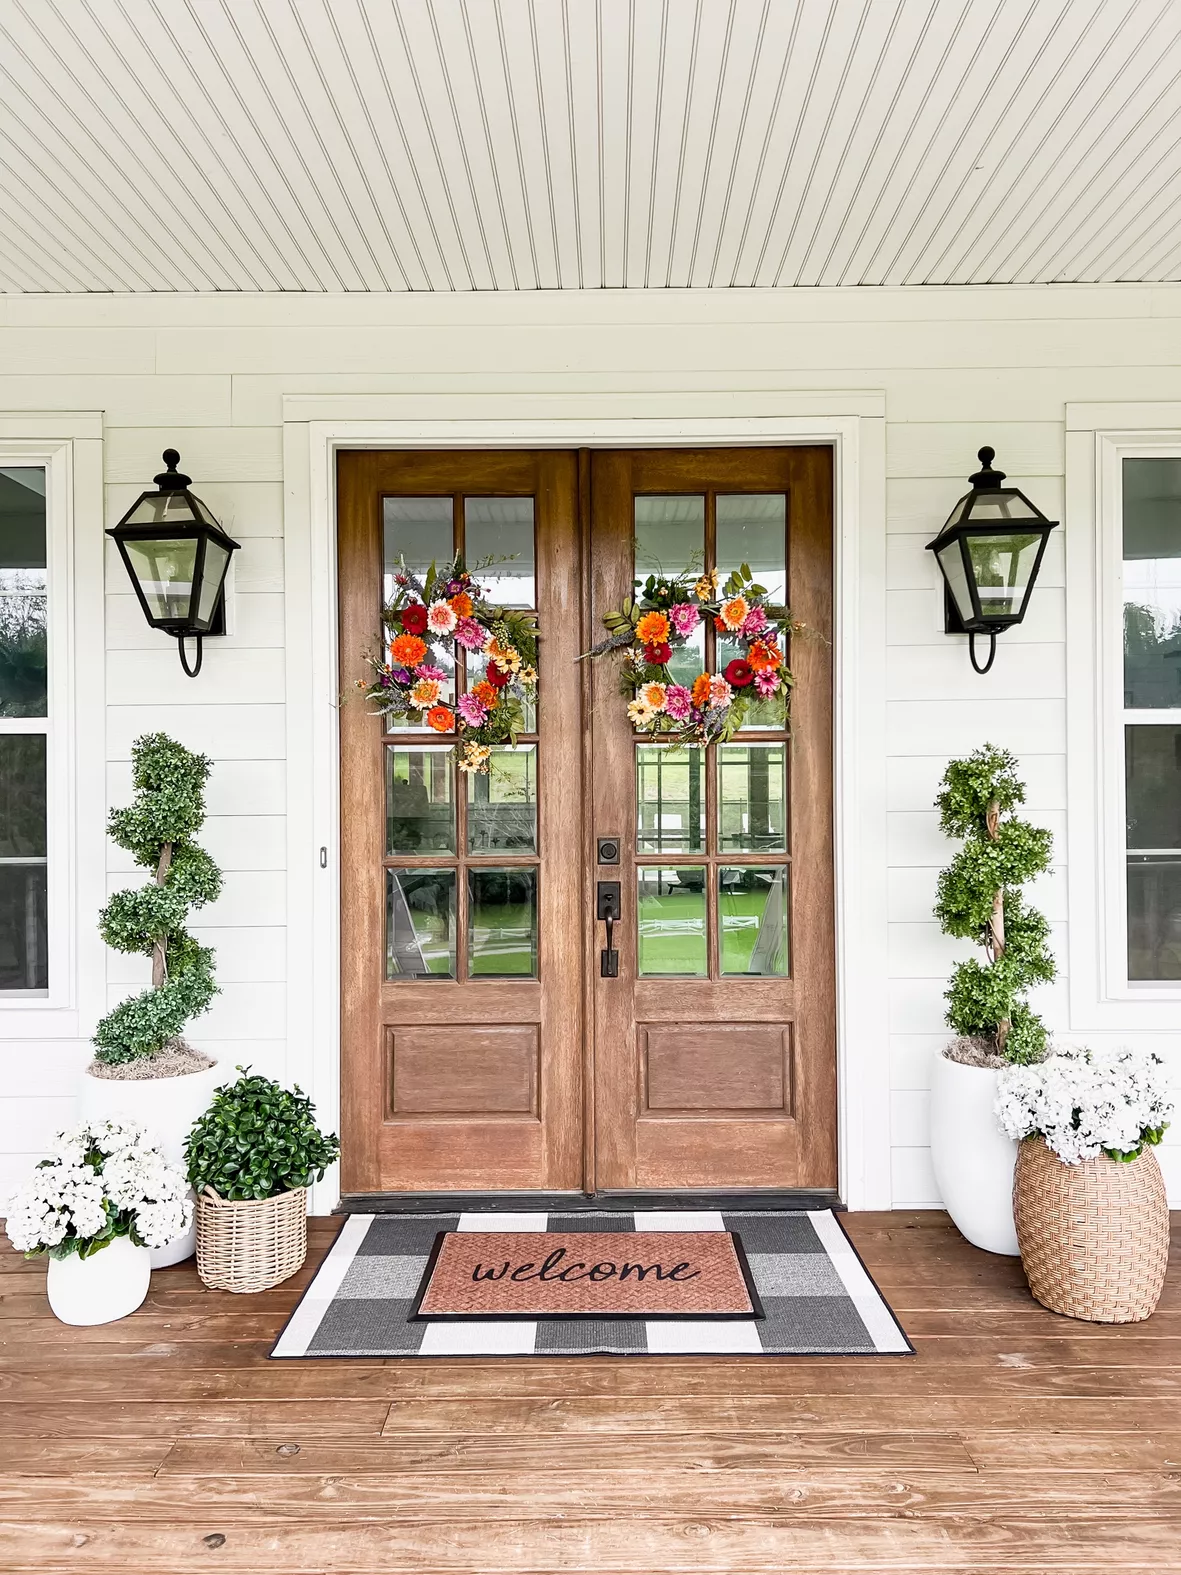 Welcome to Our Home' Doormat, Indoor Outdoor Rug, Large Front Door